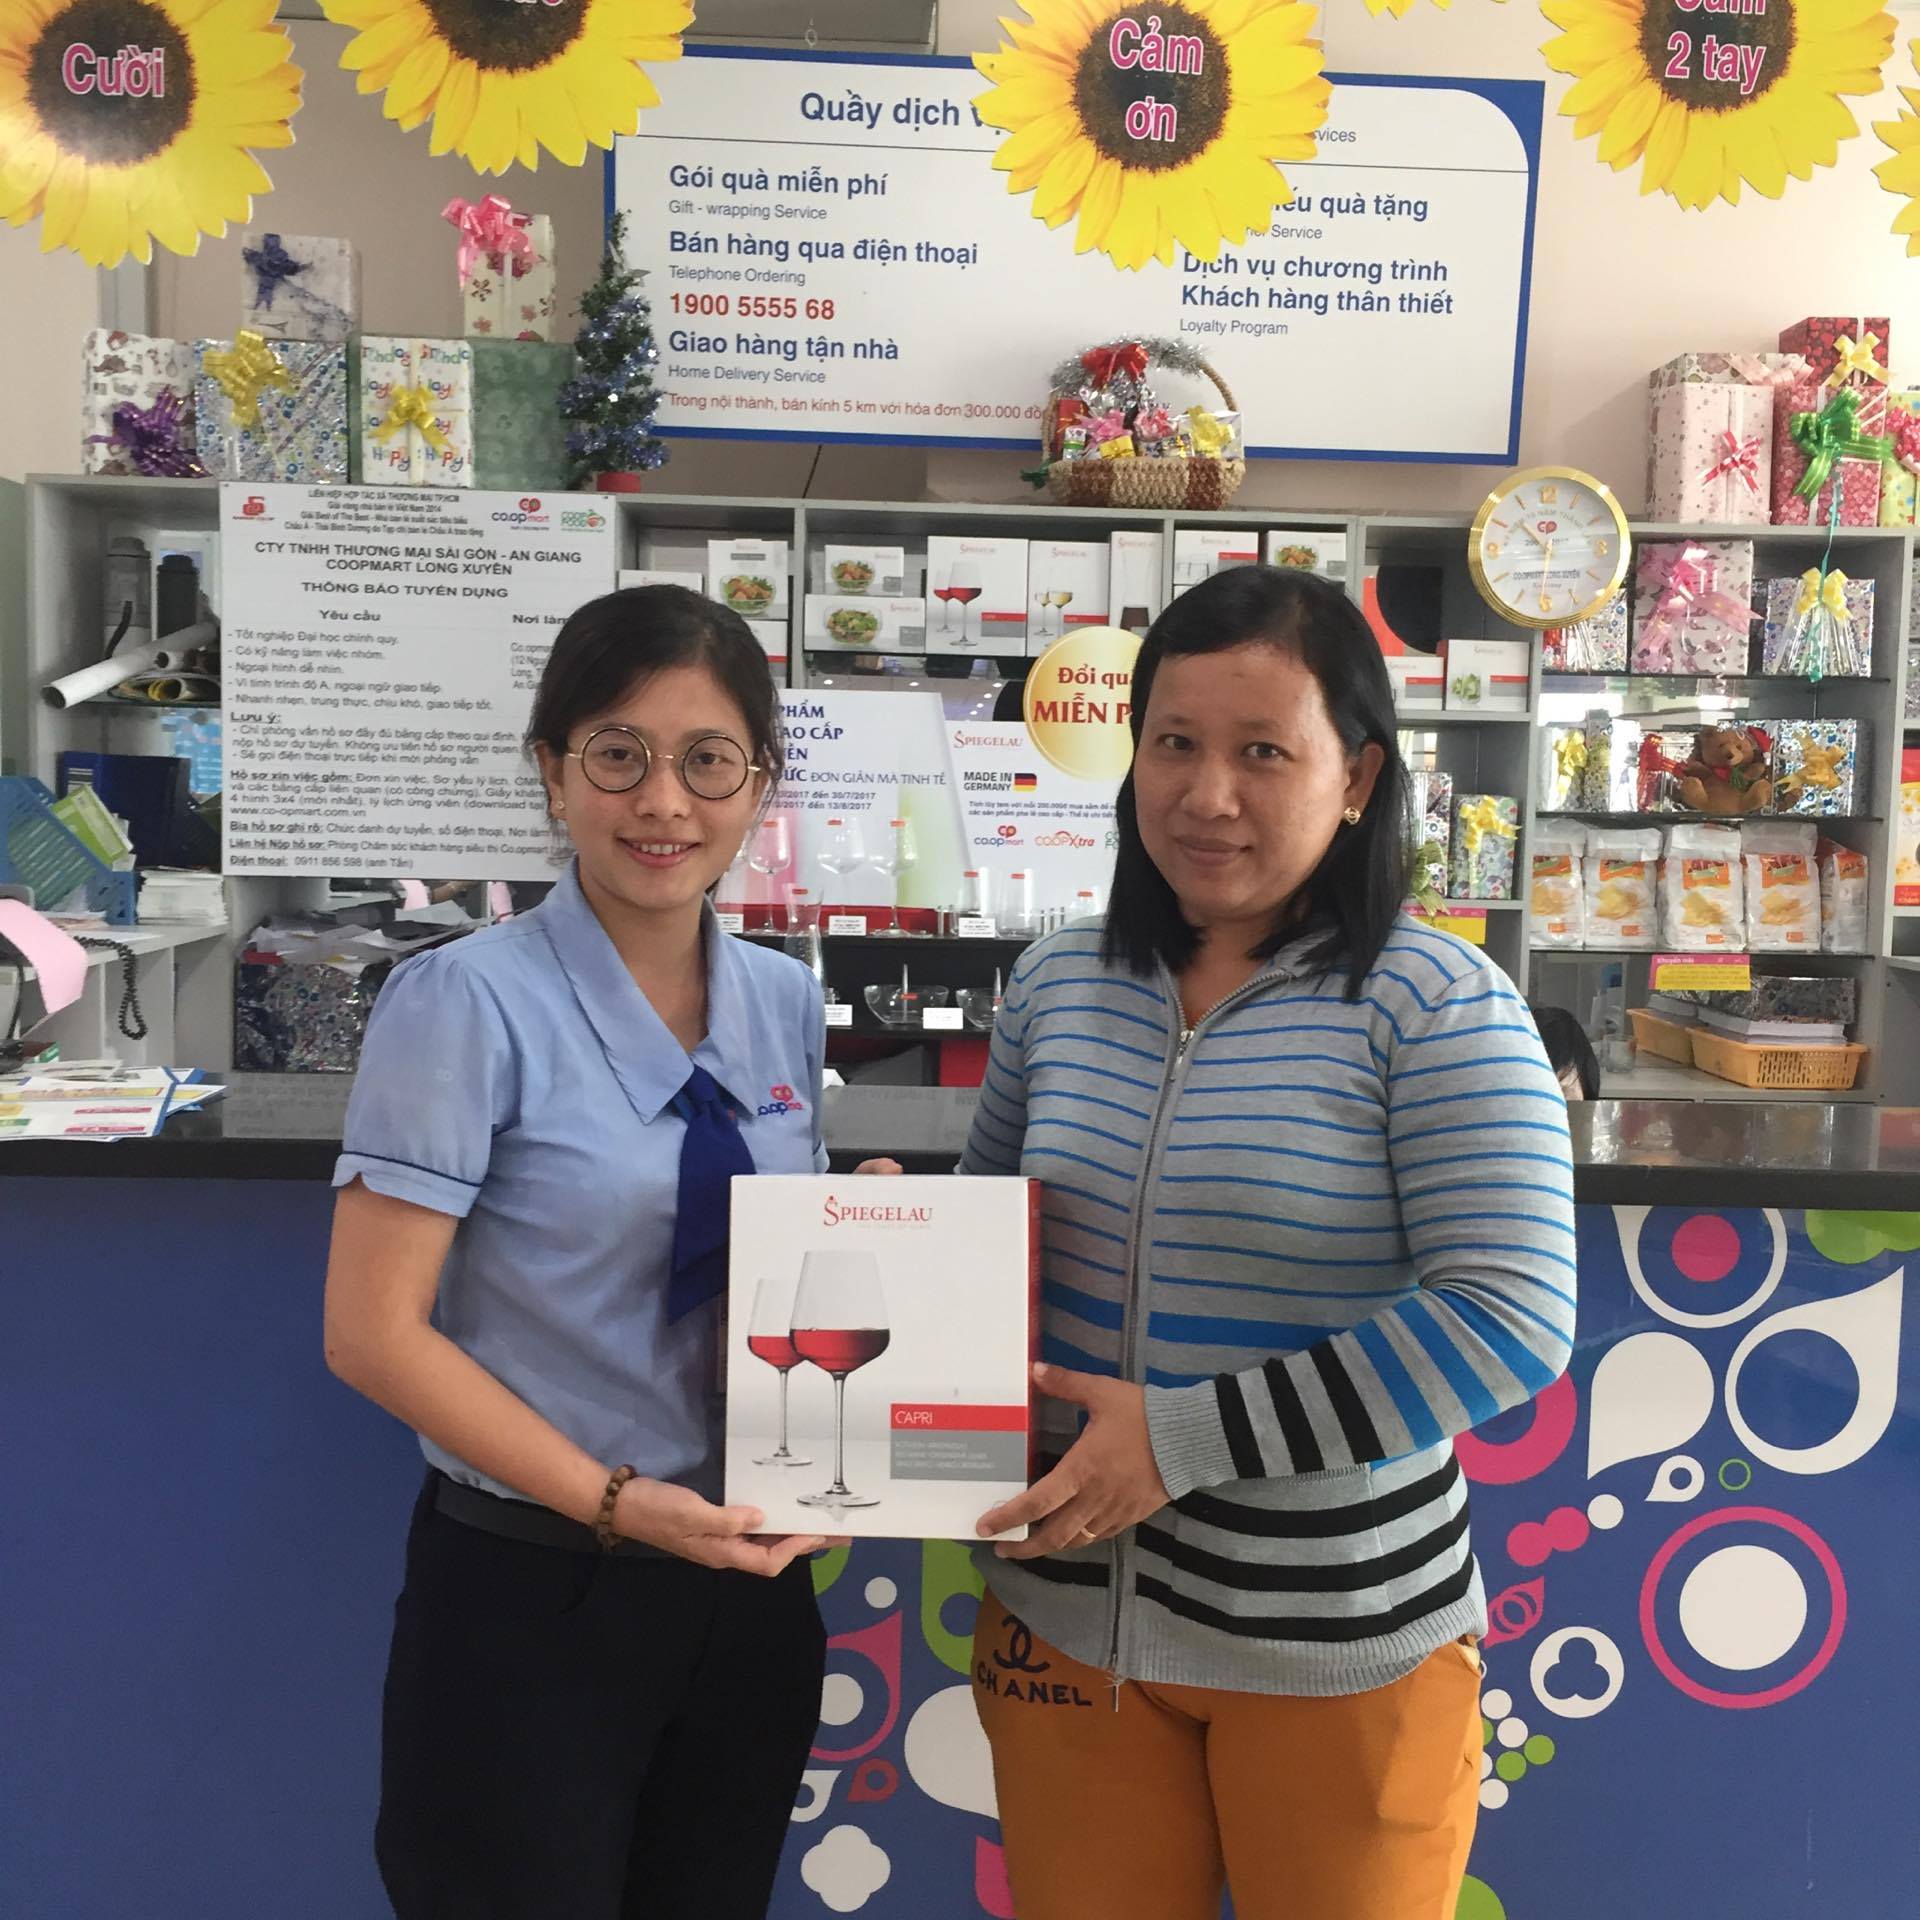 Một khách hàng nhận miễn phí bộ 2 ly vang đỏ tại Co.opmart Cam Ranh